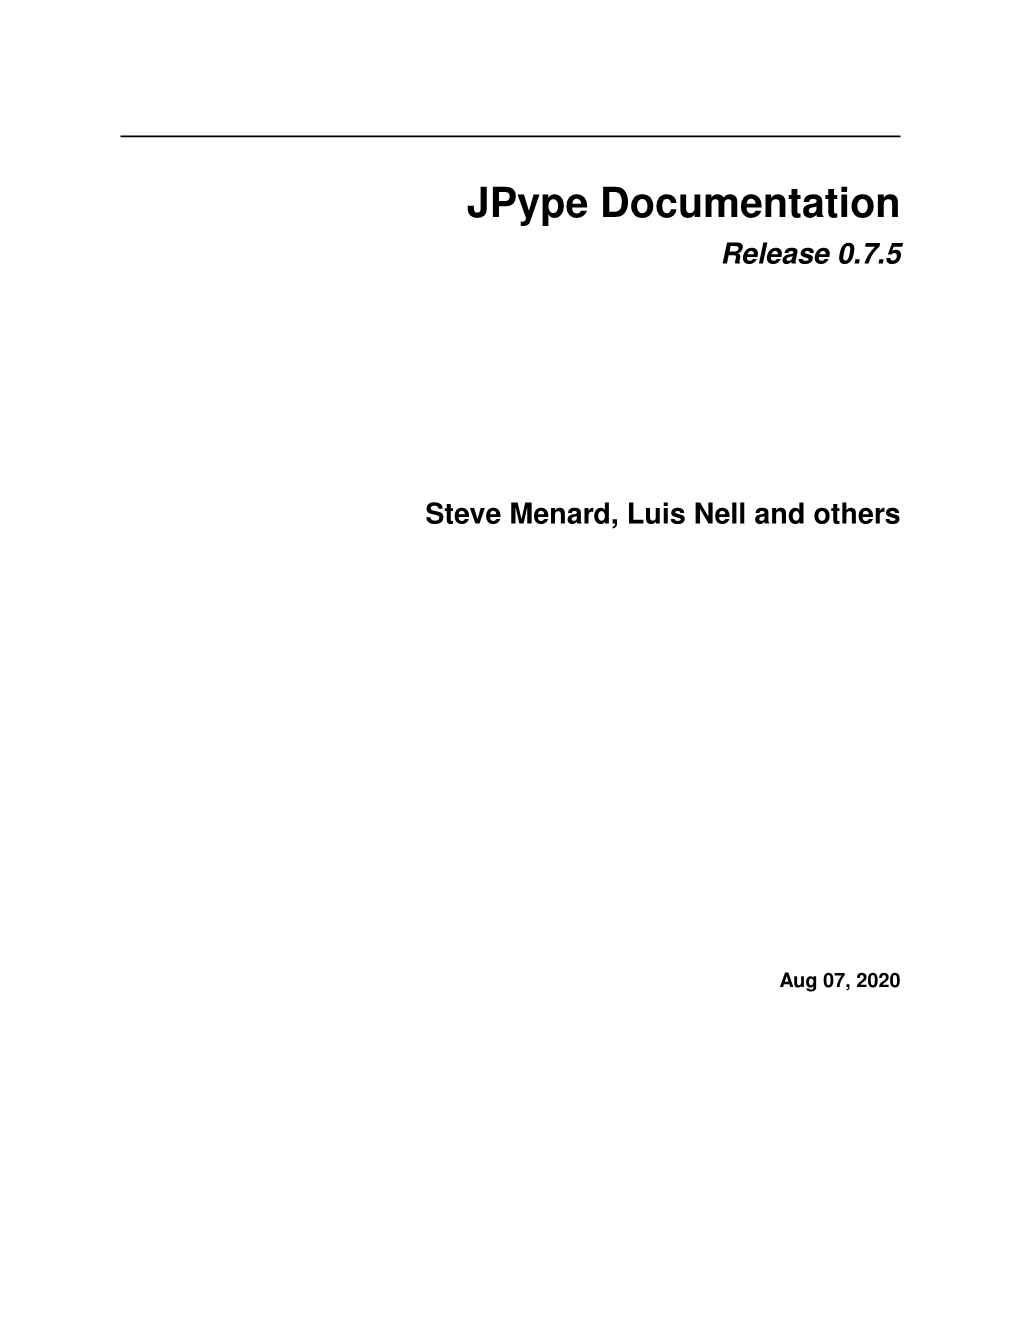 Jpype Documentation Release 0.7.5